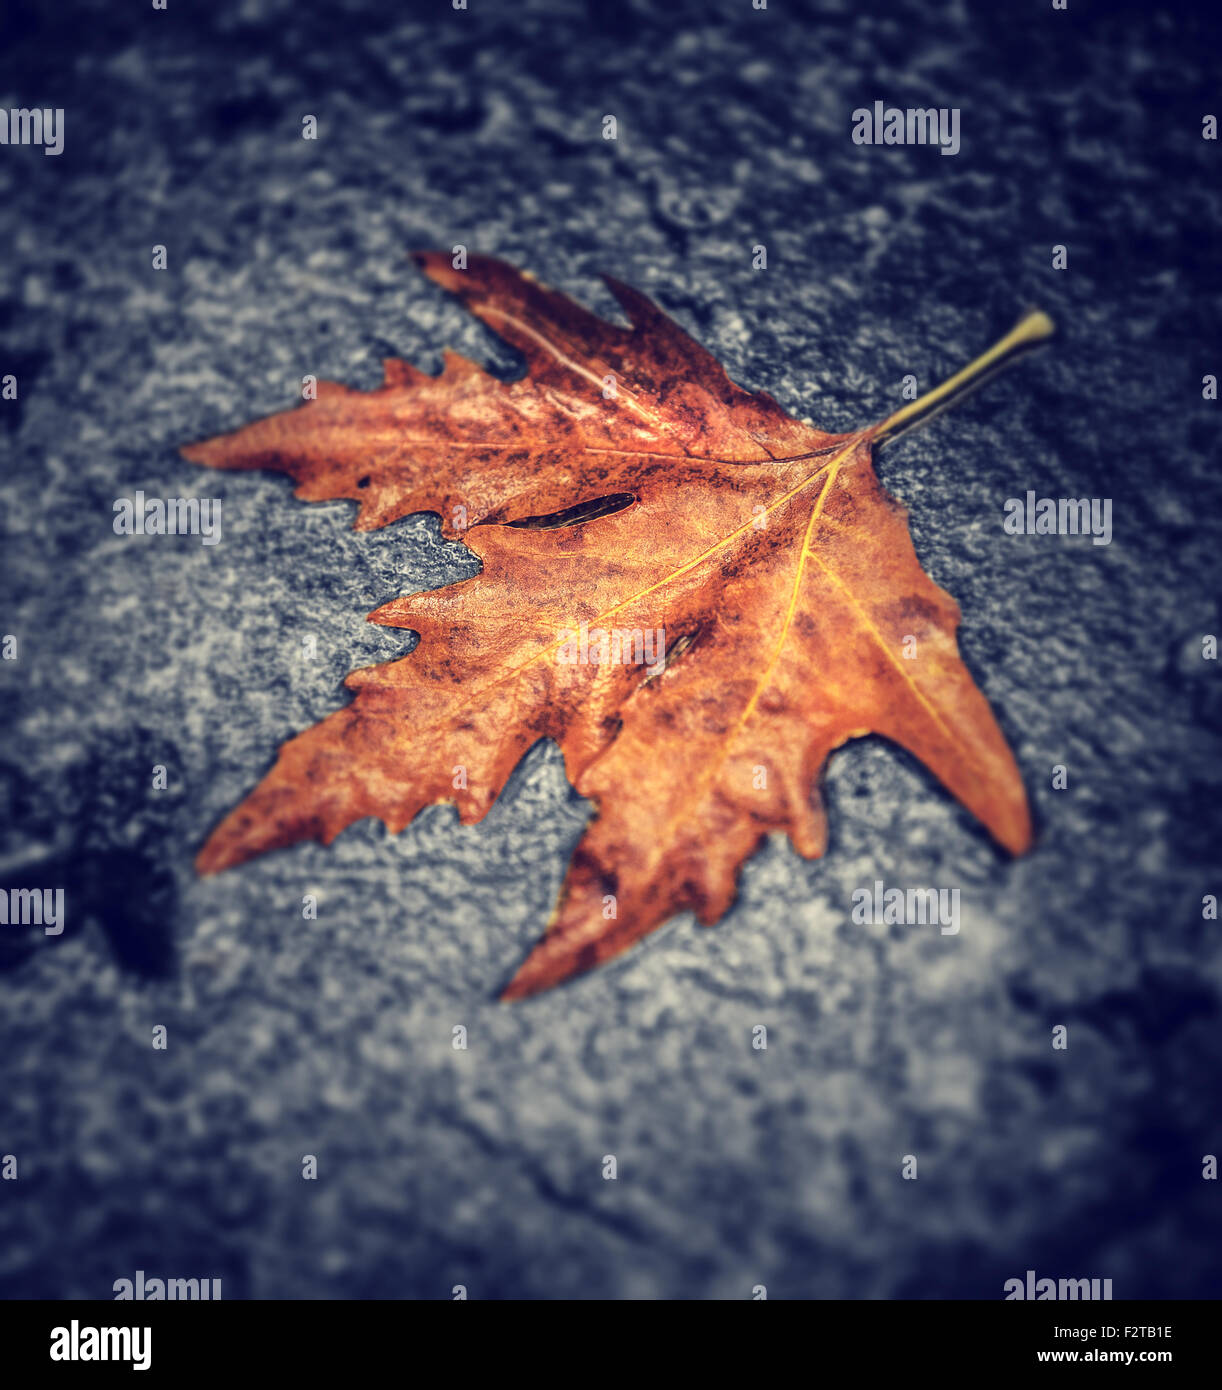 Feuille d'érable sec sur l'asphalte humide, abstract natural background, automne nature, changements de saison concept Banque D'Images